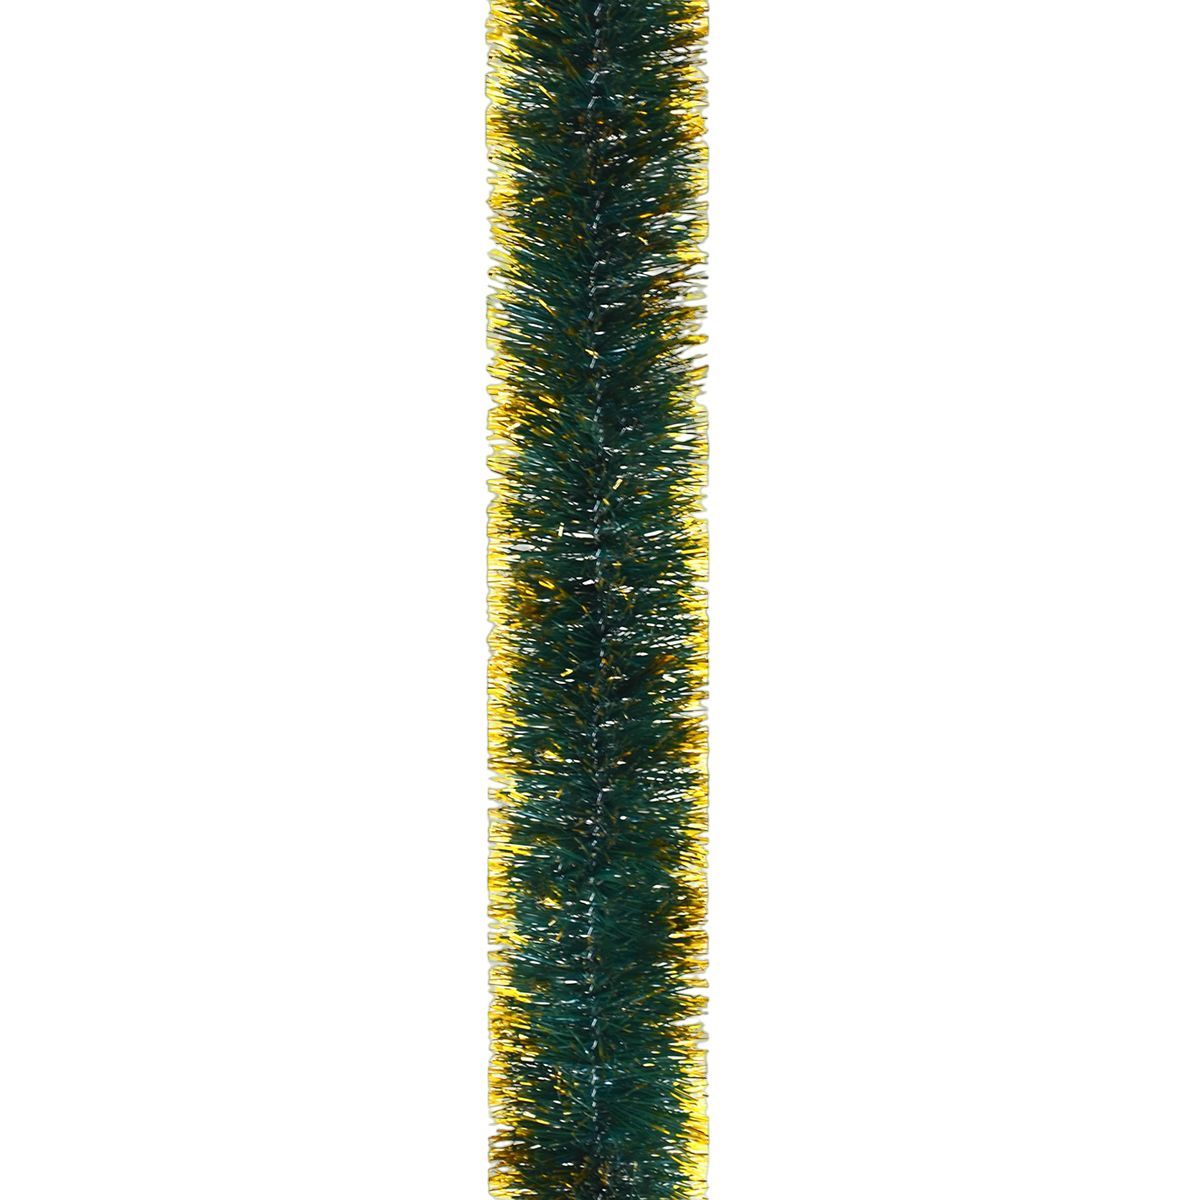 Мишура Novogod'ko 5 см 2 м зеленая матовая с золотыми кончиками (980375) - фото 1